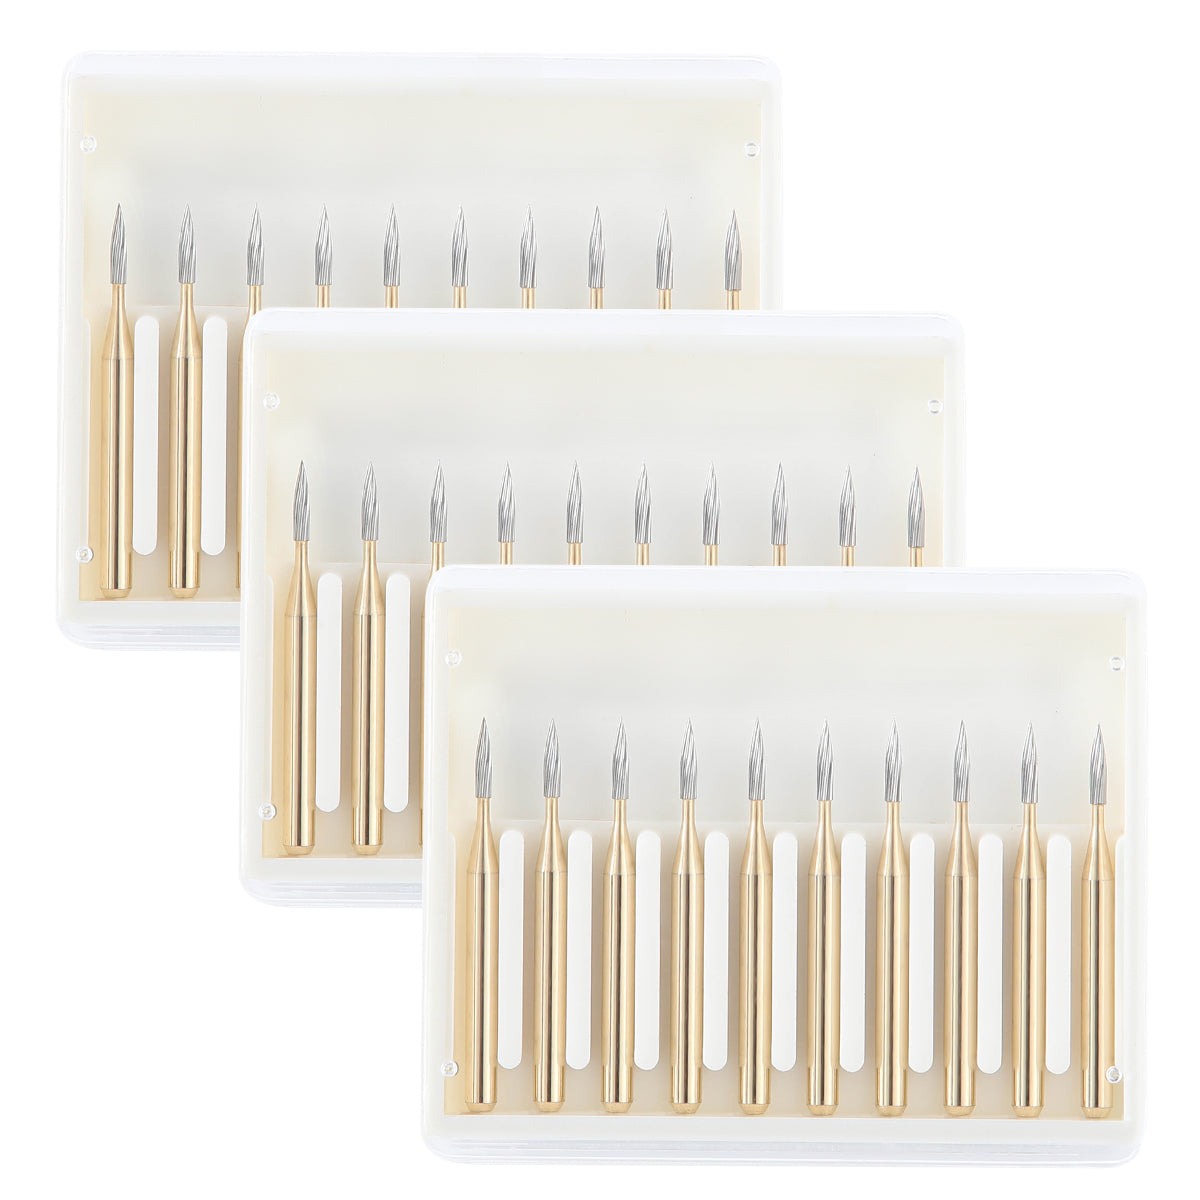 3 Boxes Dental Carbide Burs FG 7901 Needle Shaped Trimming & Finishing 10pcs/Box - azdentall.com